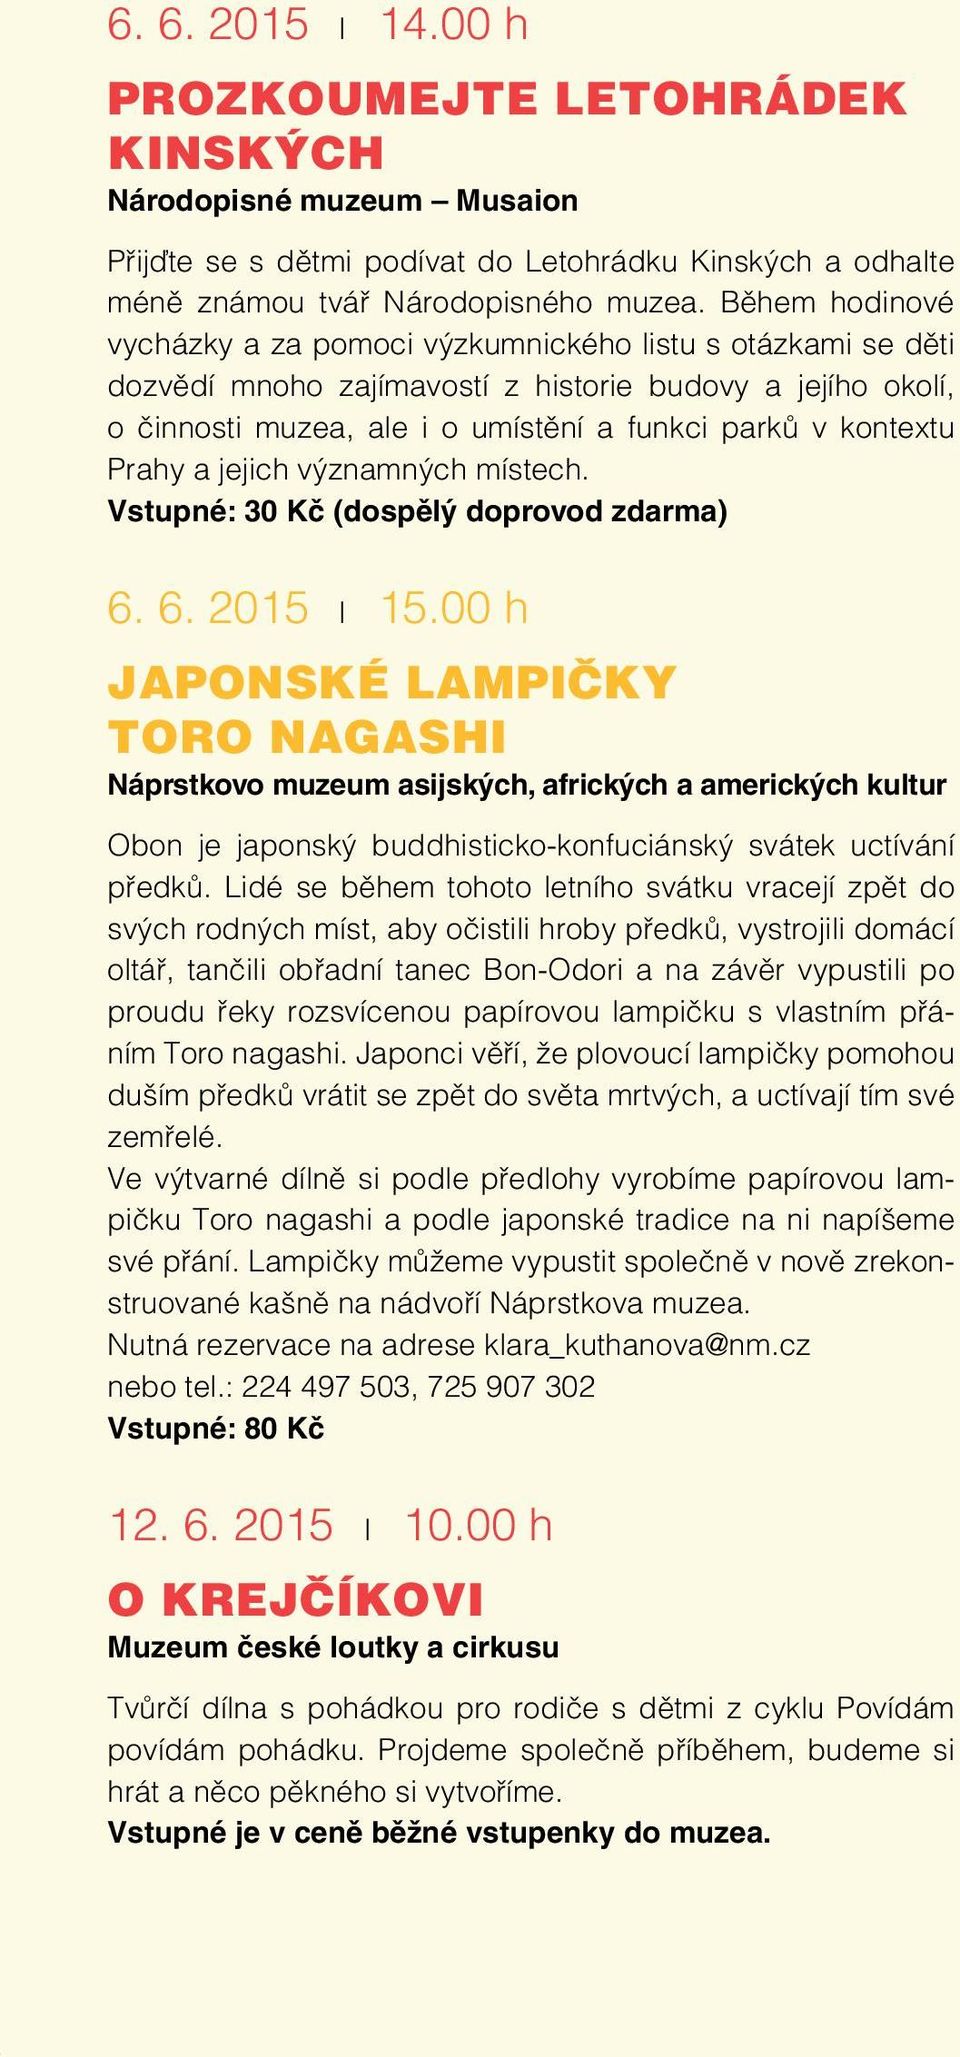 Prahy a jejich významných místech. Vstupné: 30 Kč (dospělý doprovod zdarma) 6. 6. 2015 l 15.00 h JAPONSKÉ LAMPIČKY TORO NAGASHI Obon je japonský buddhisticko-konfuciánský svátek uctívání předků.